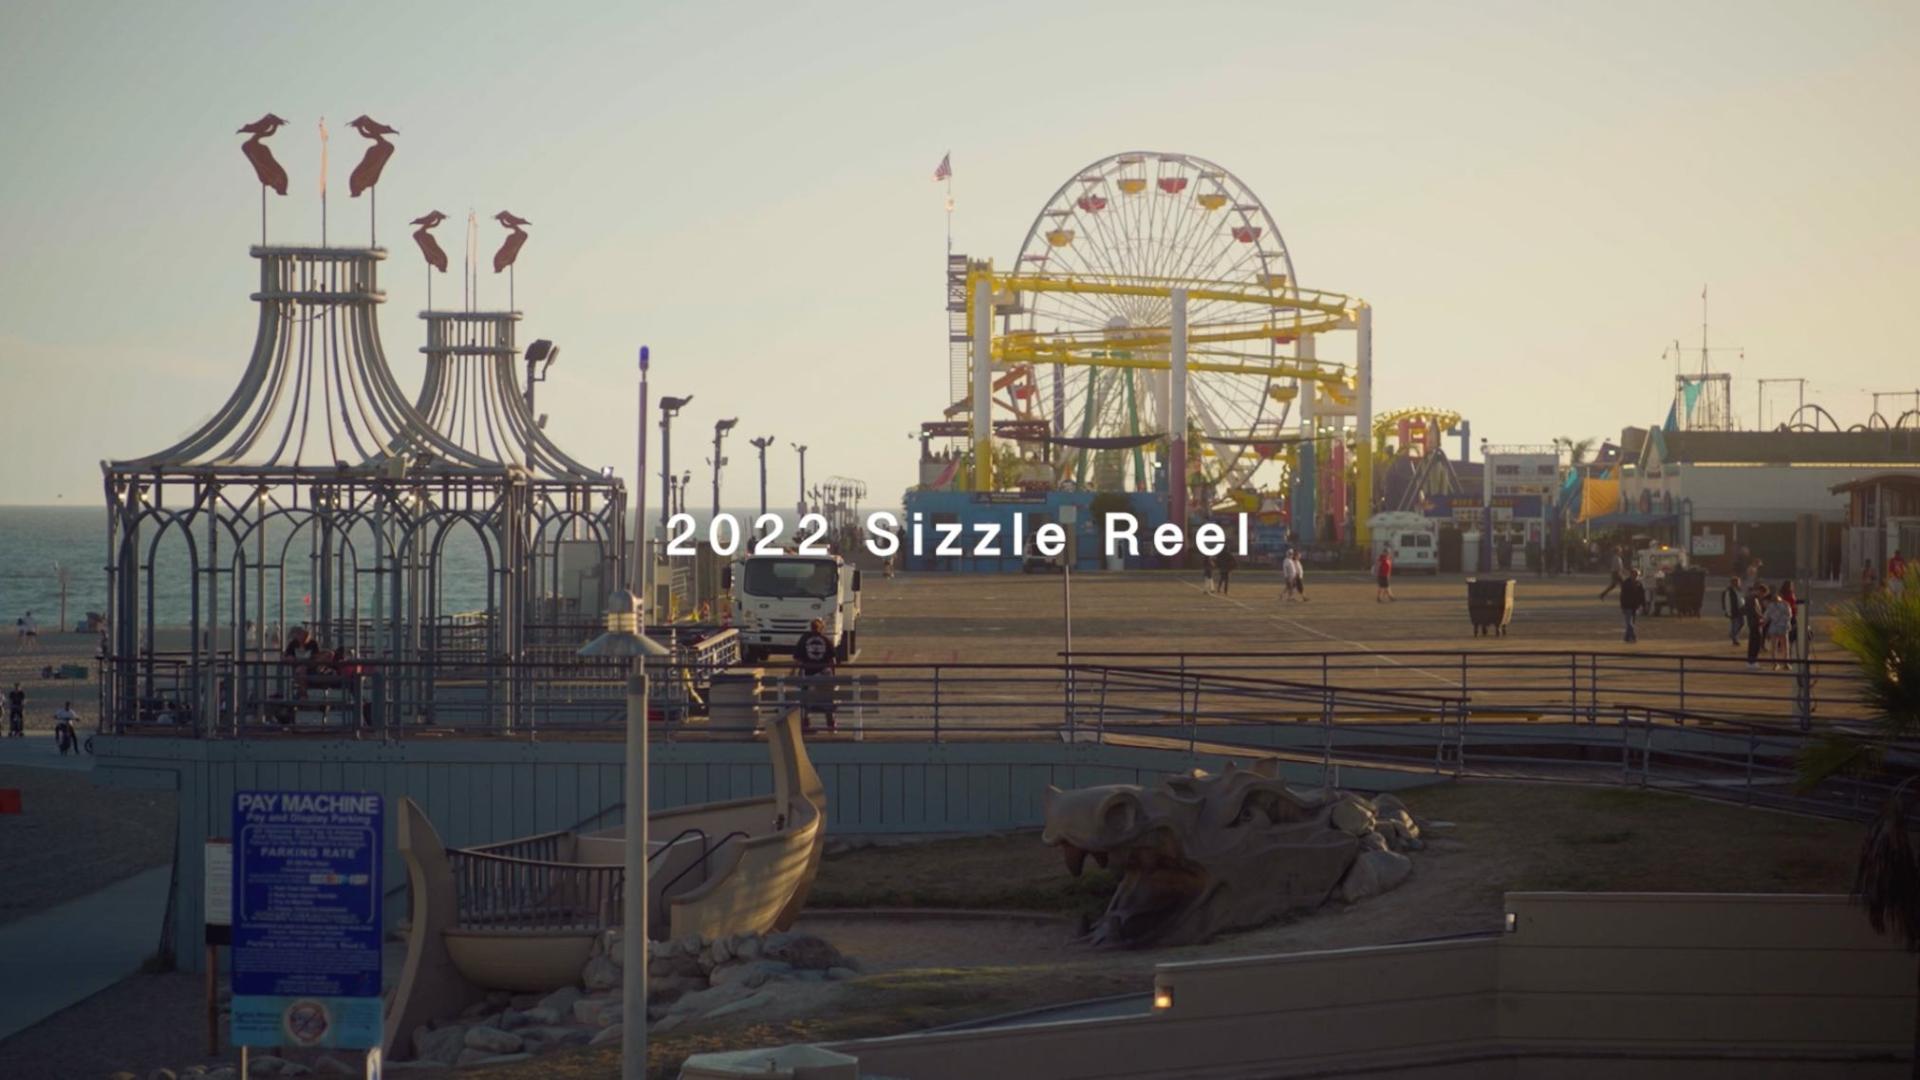 2022 Sizzle Reel